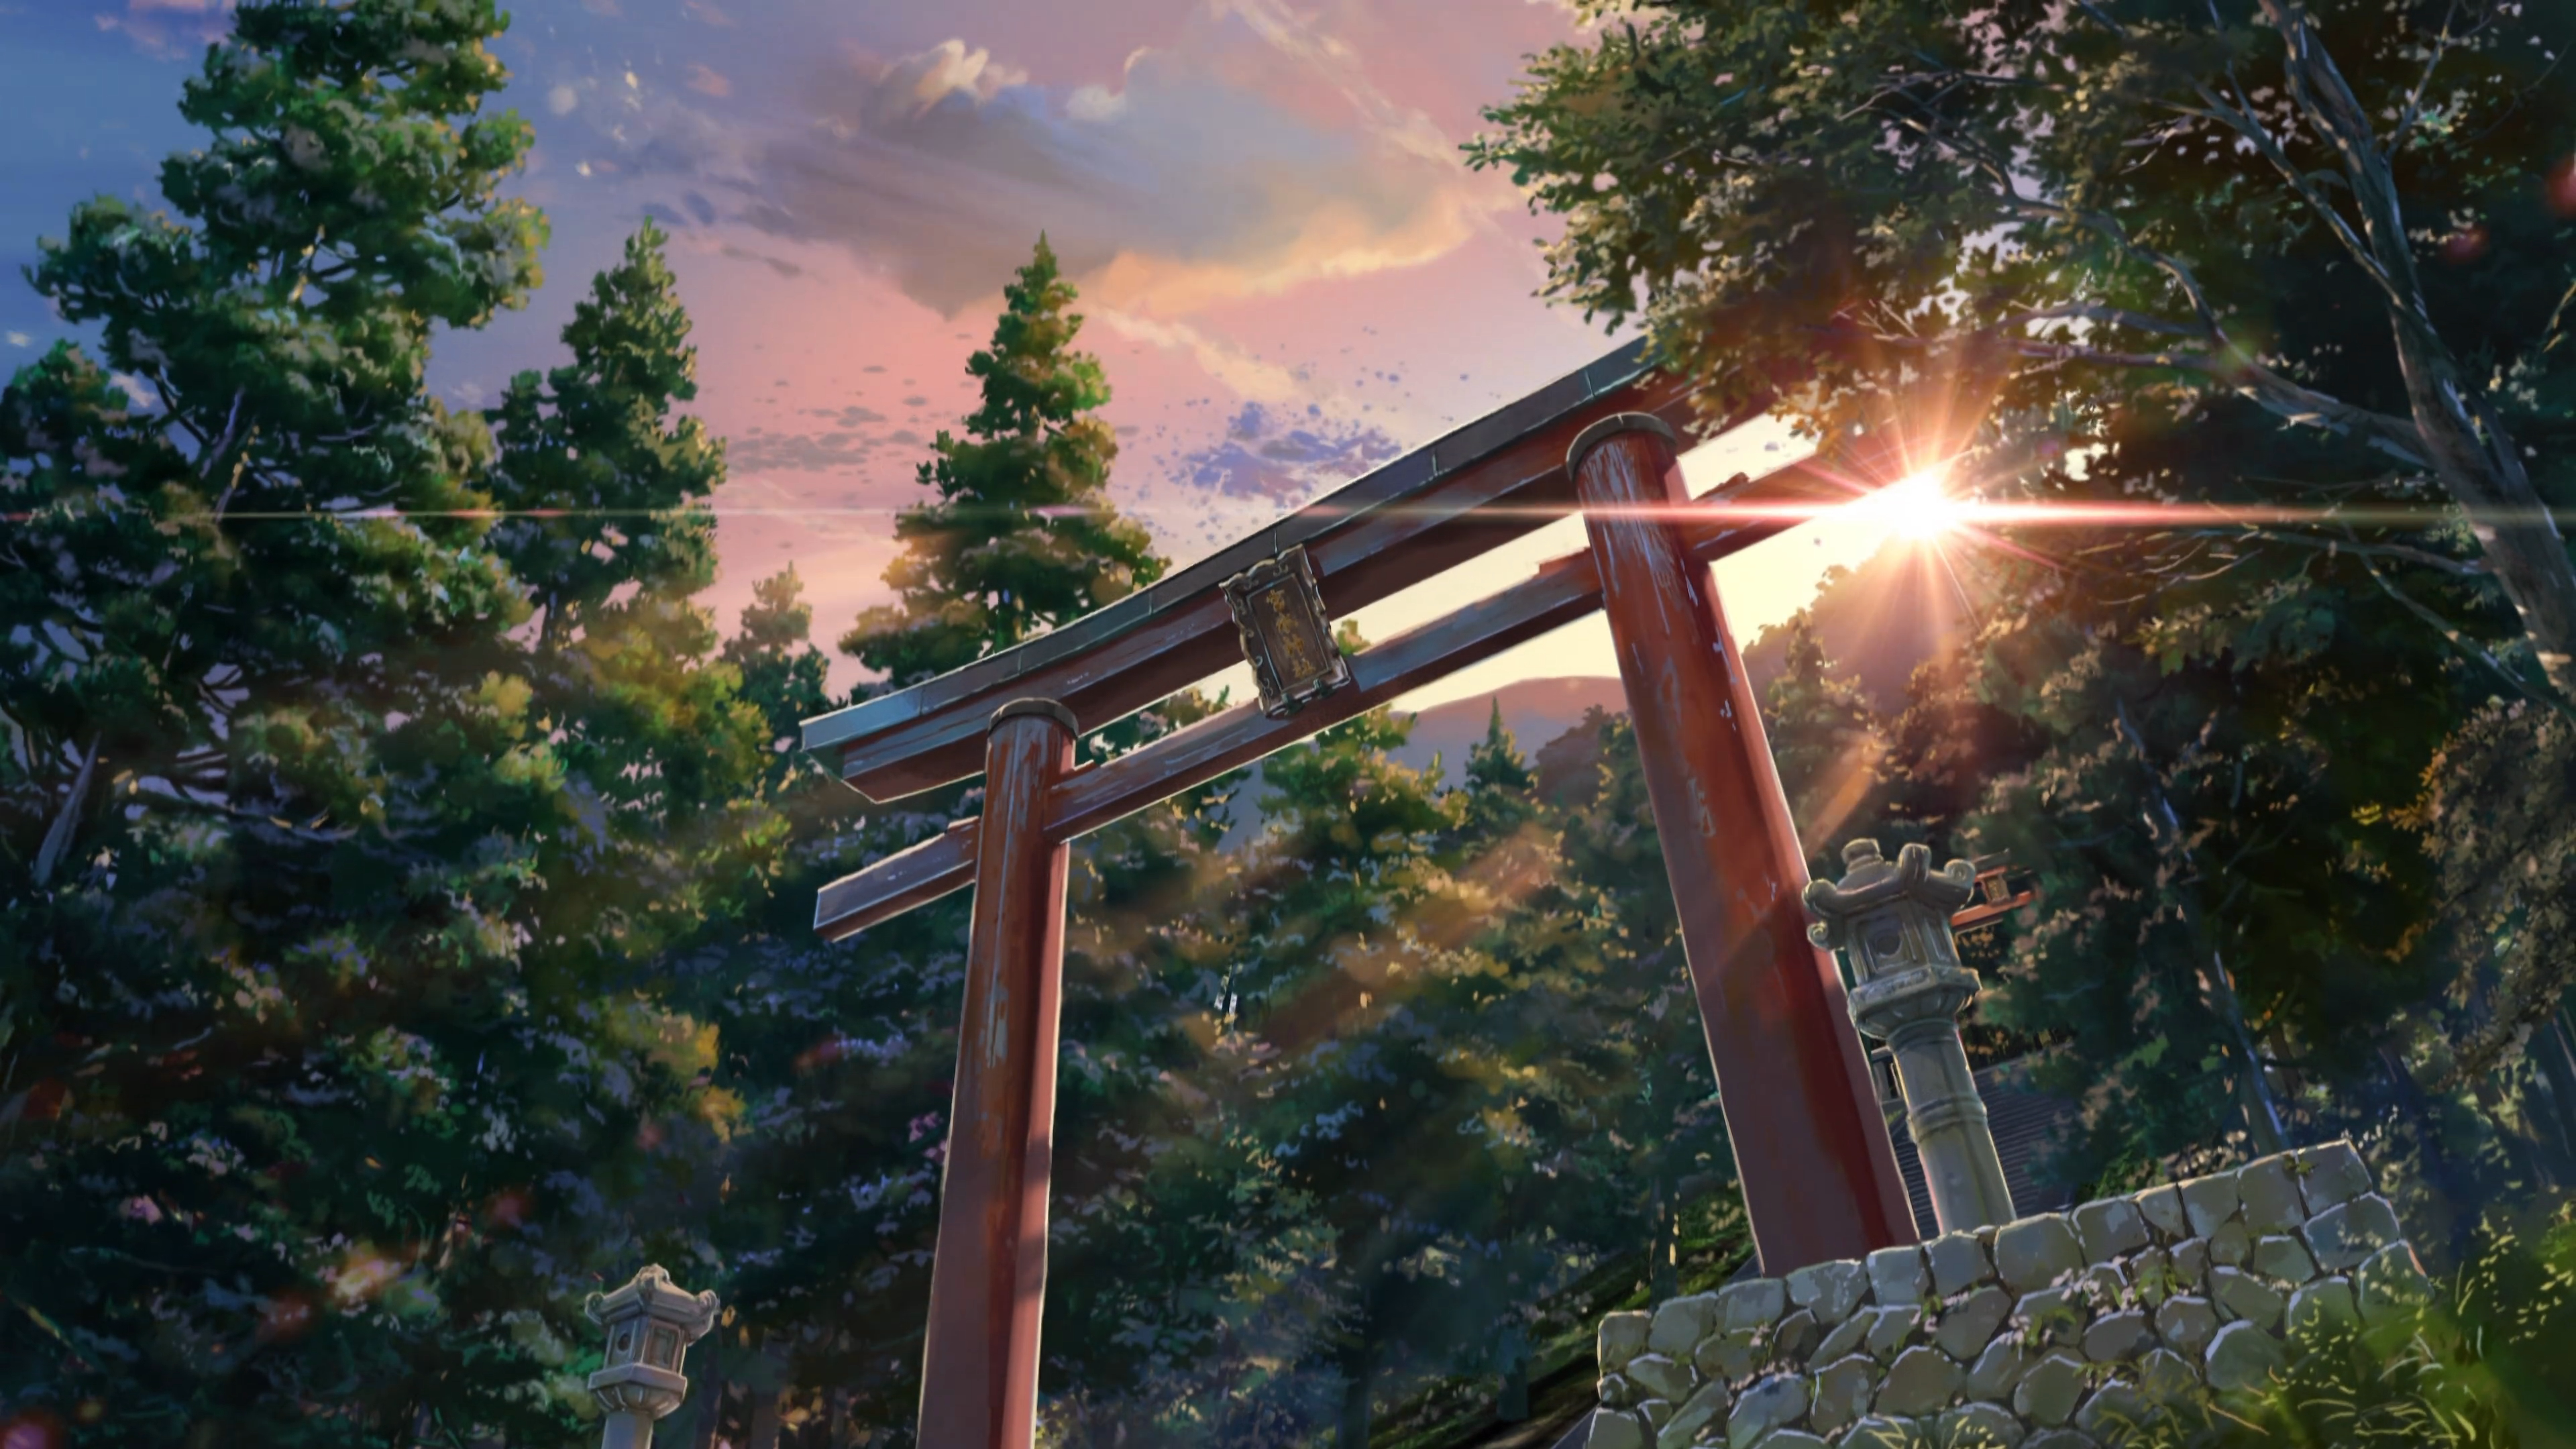 fond d'écran wa,la nature,ciel,torii,arbre,matin